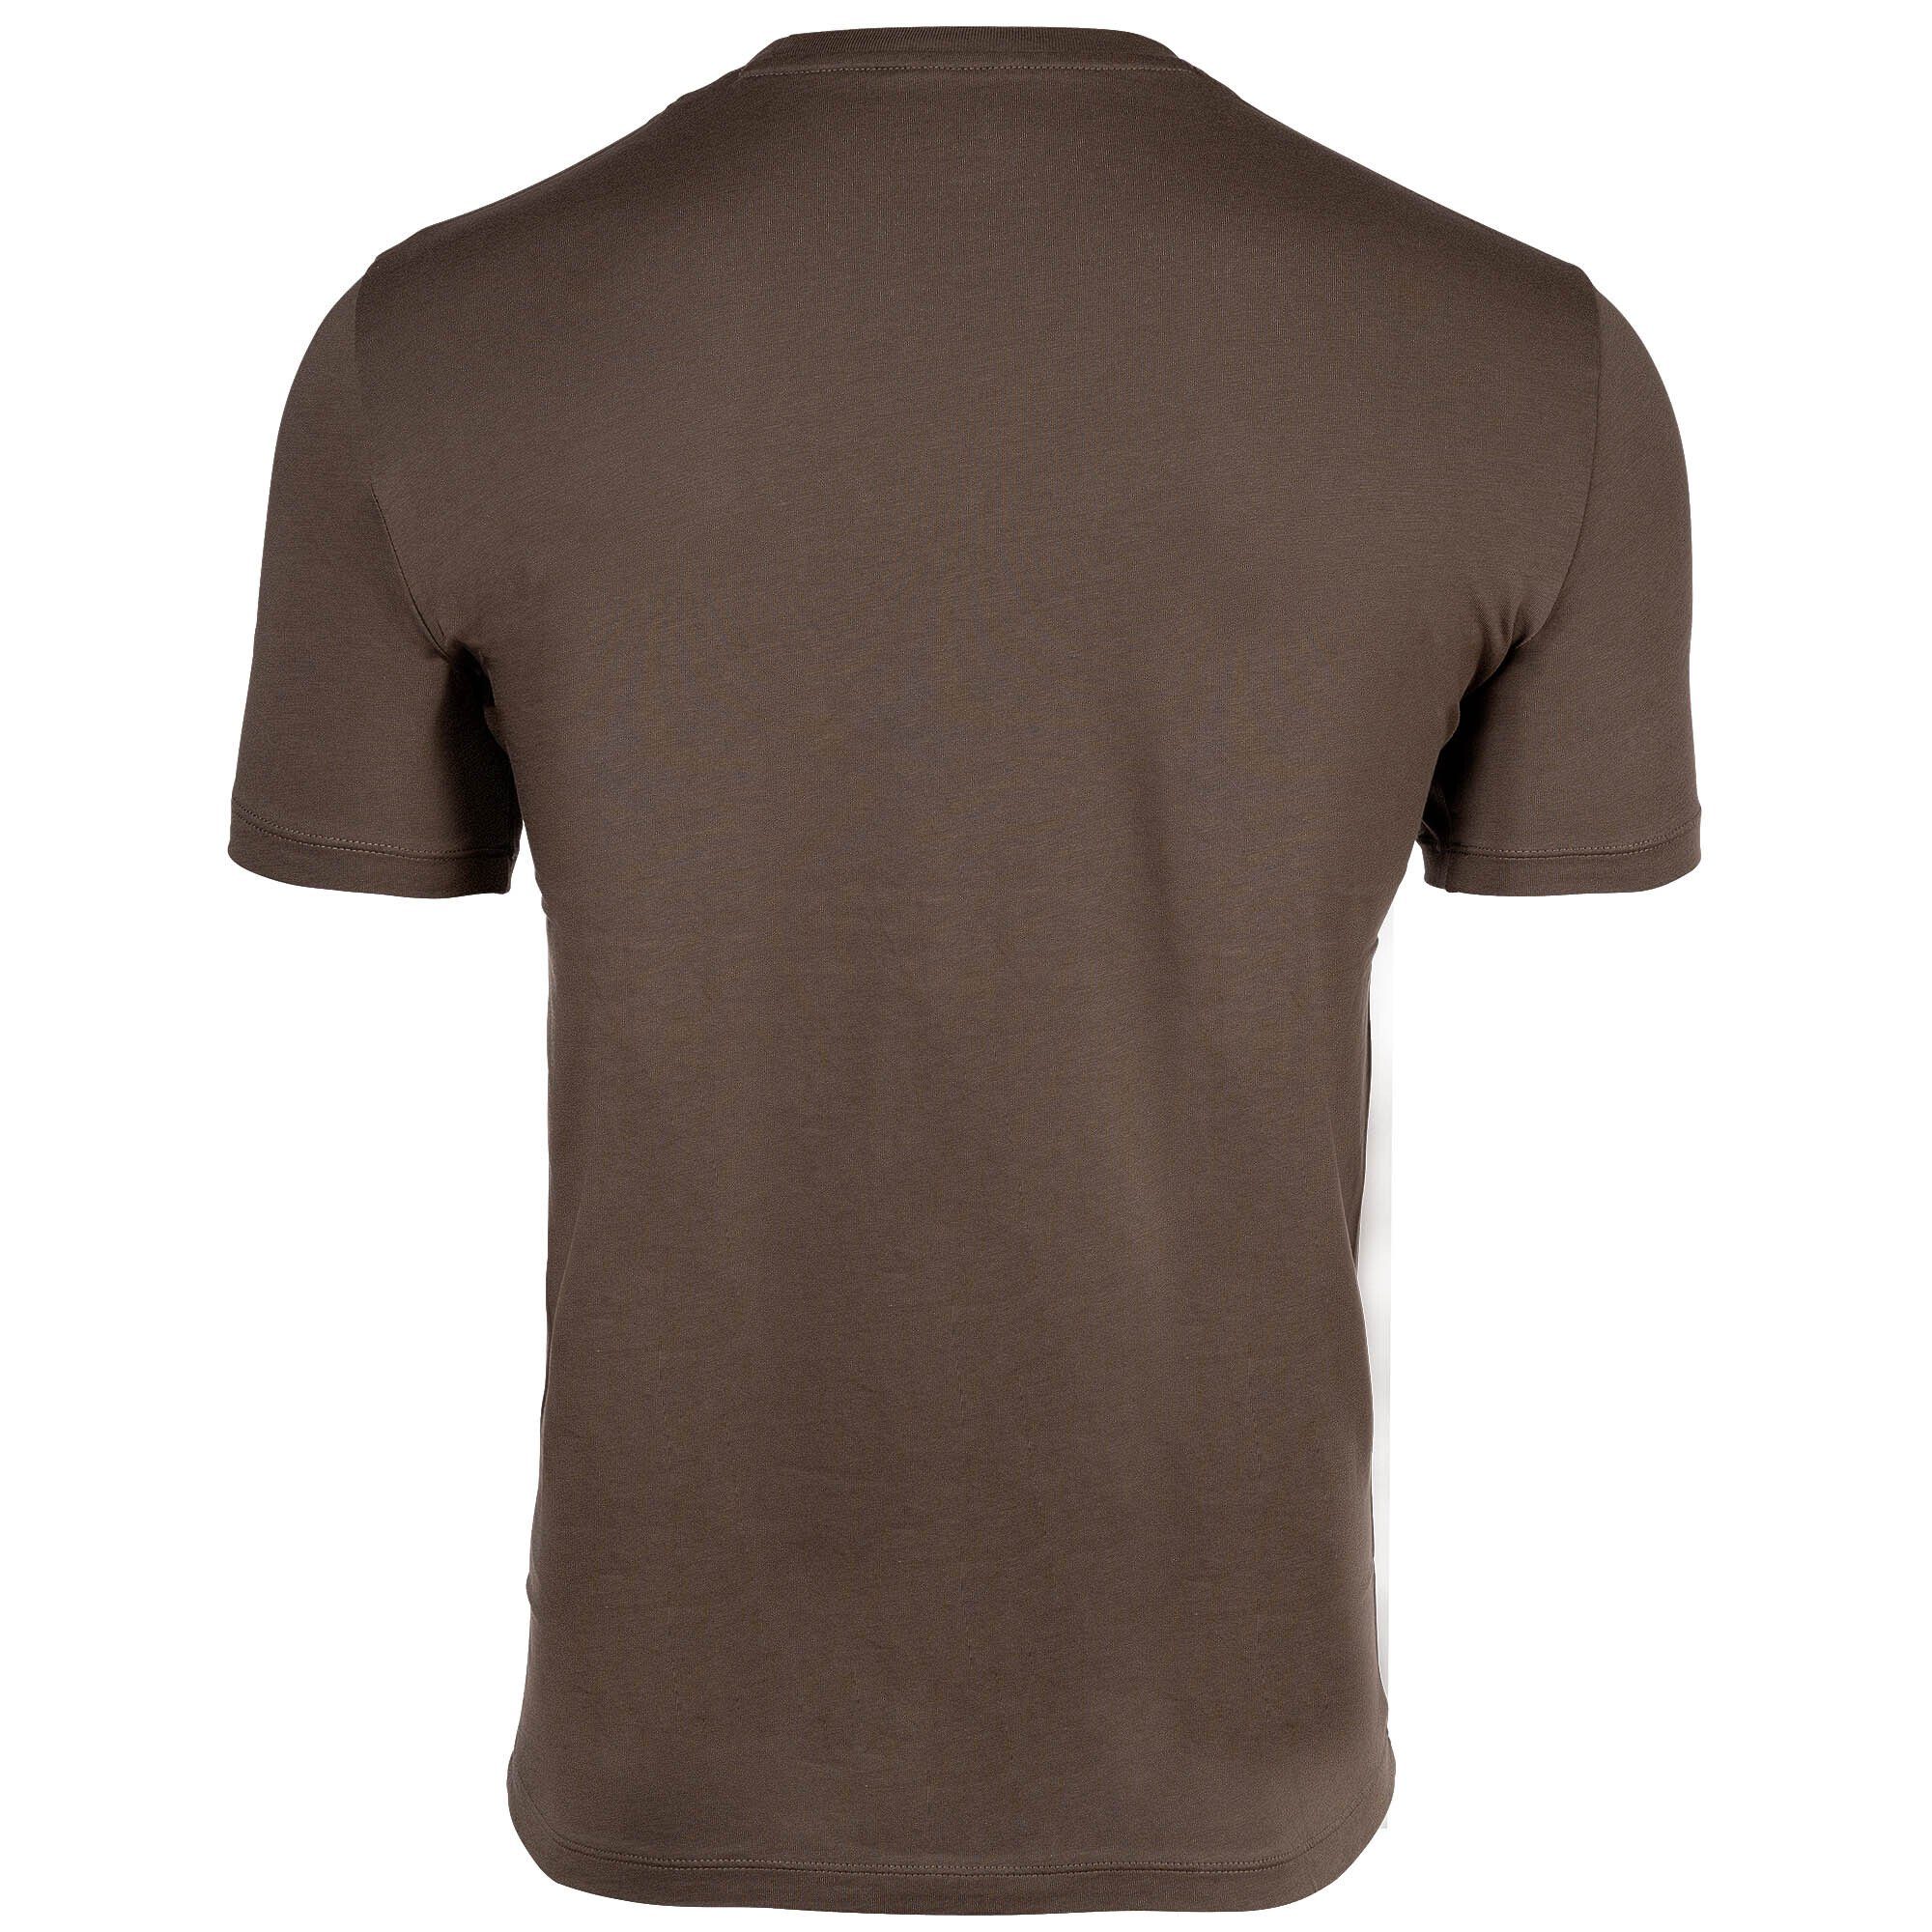 Khaki T-Shirt (Crocodile) - Herren EXCHANGE Cotton T-Shirt Schriftzug, Rundhals, ARMANI